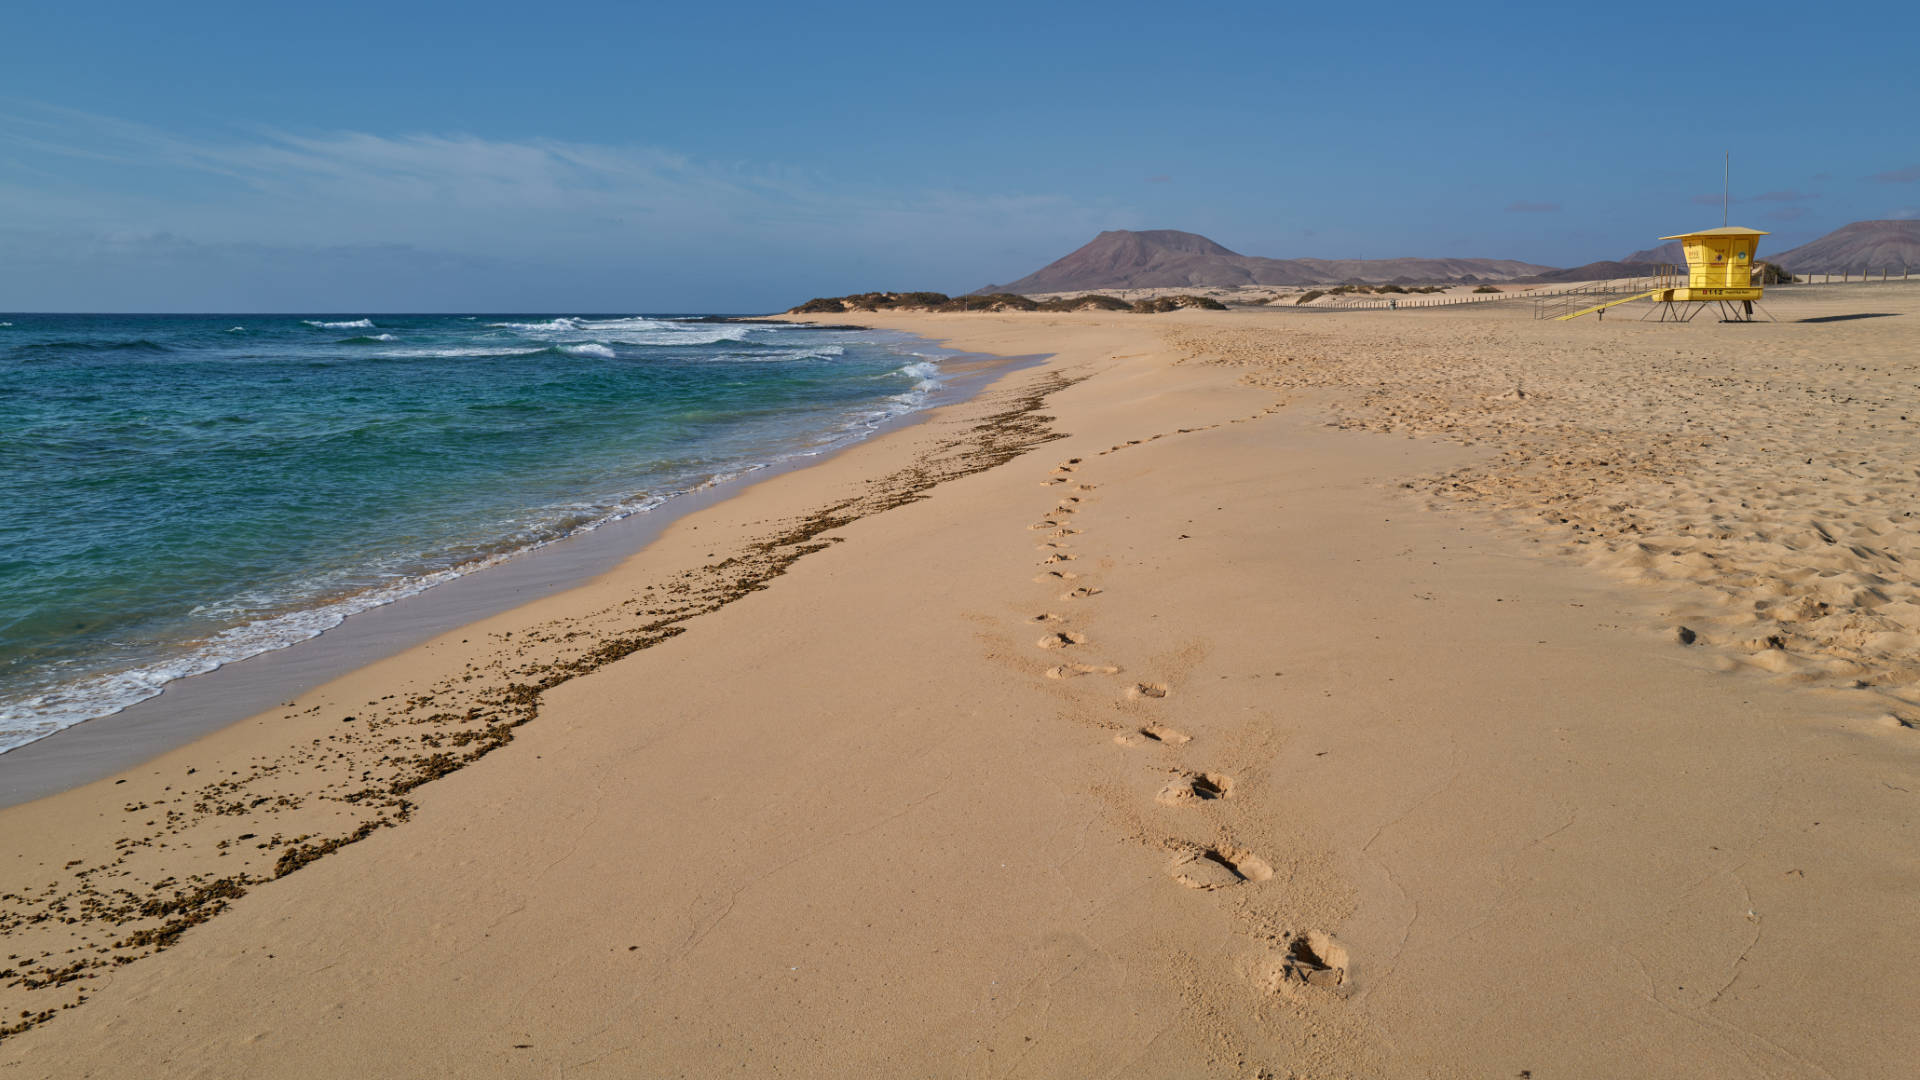 Playa del Moro El Jable Dunas de Corralejo Fuerteventura.